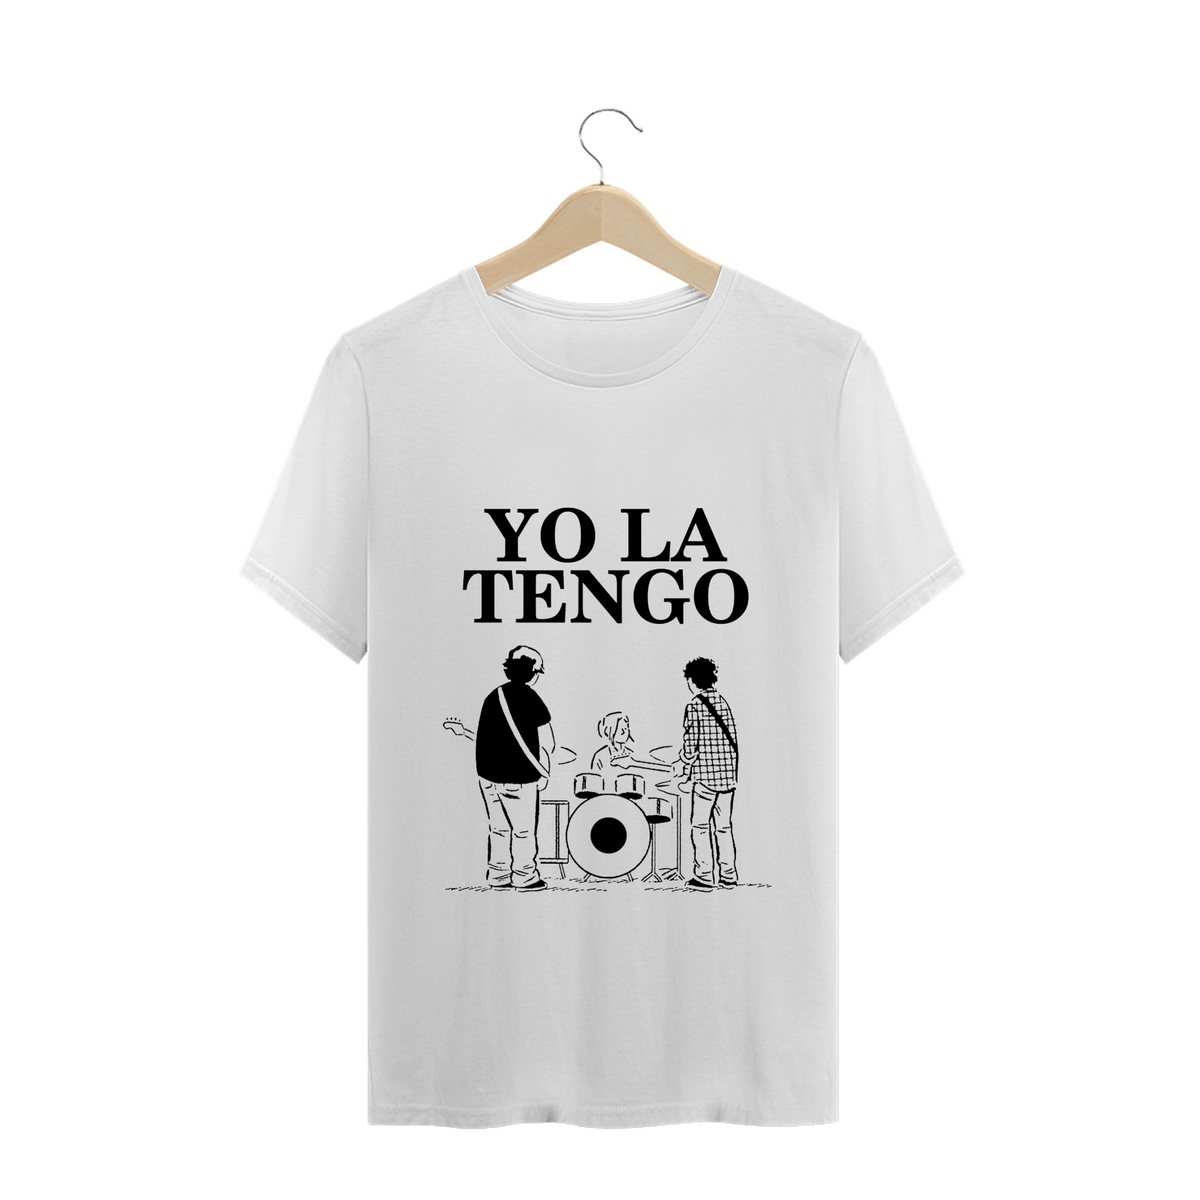 Nome do produto: YO LA TENGO